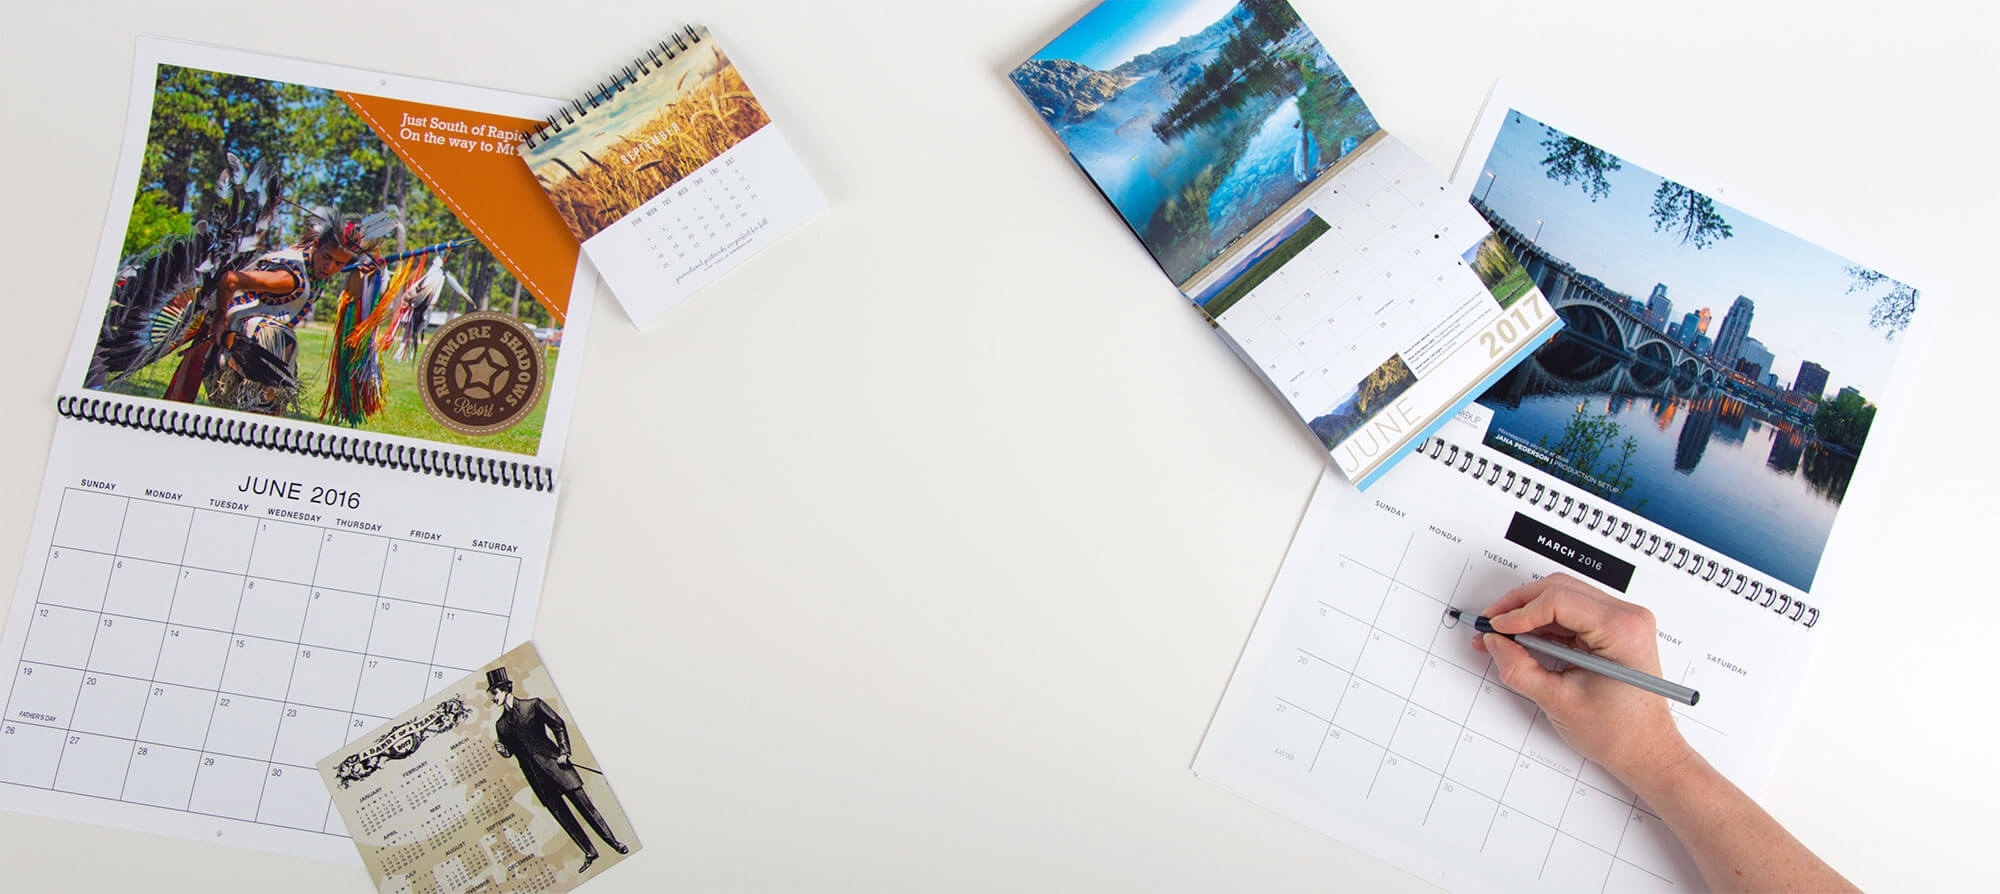 Custom Calendar Printing | Personalized Calendars | Smartpress Calendar Printing For Photographers